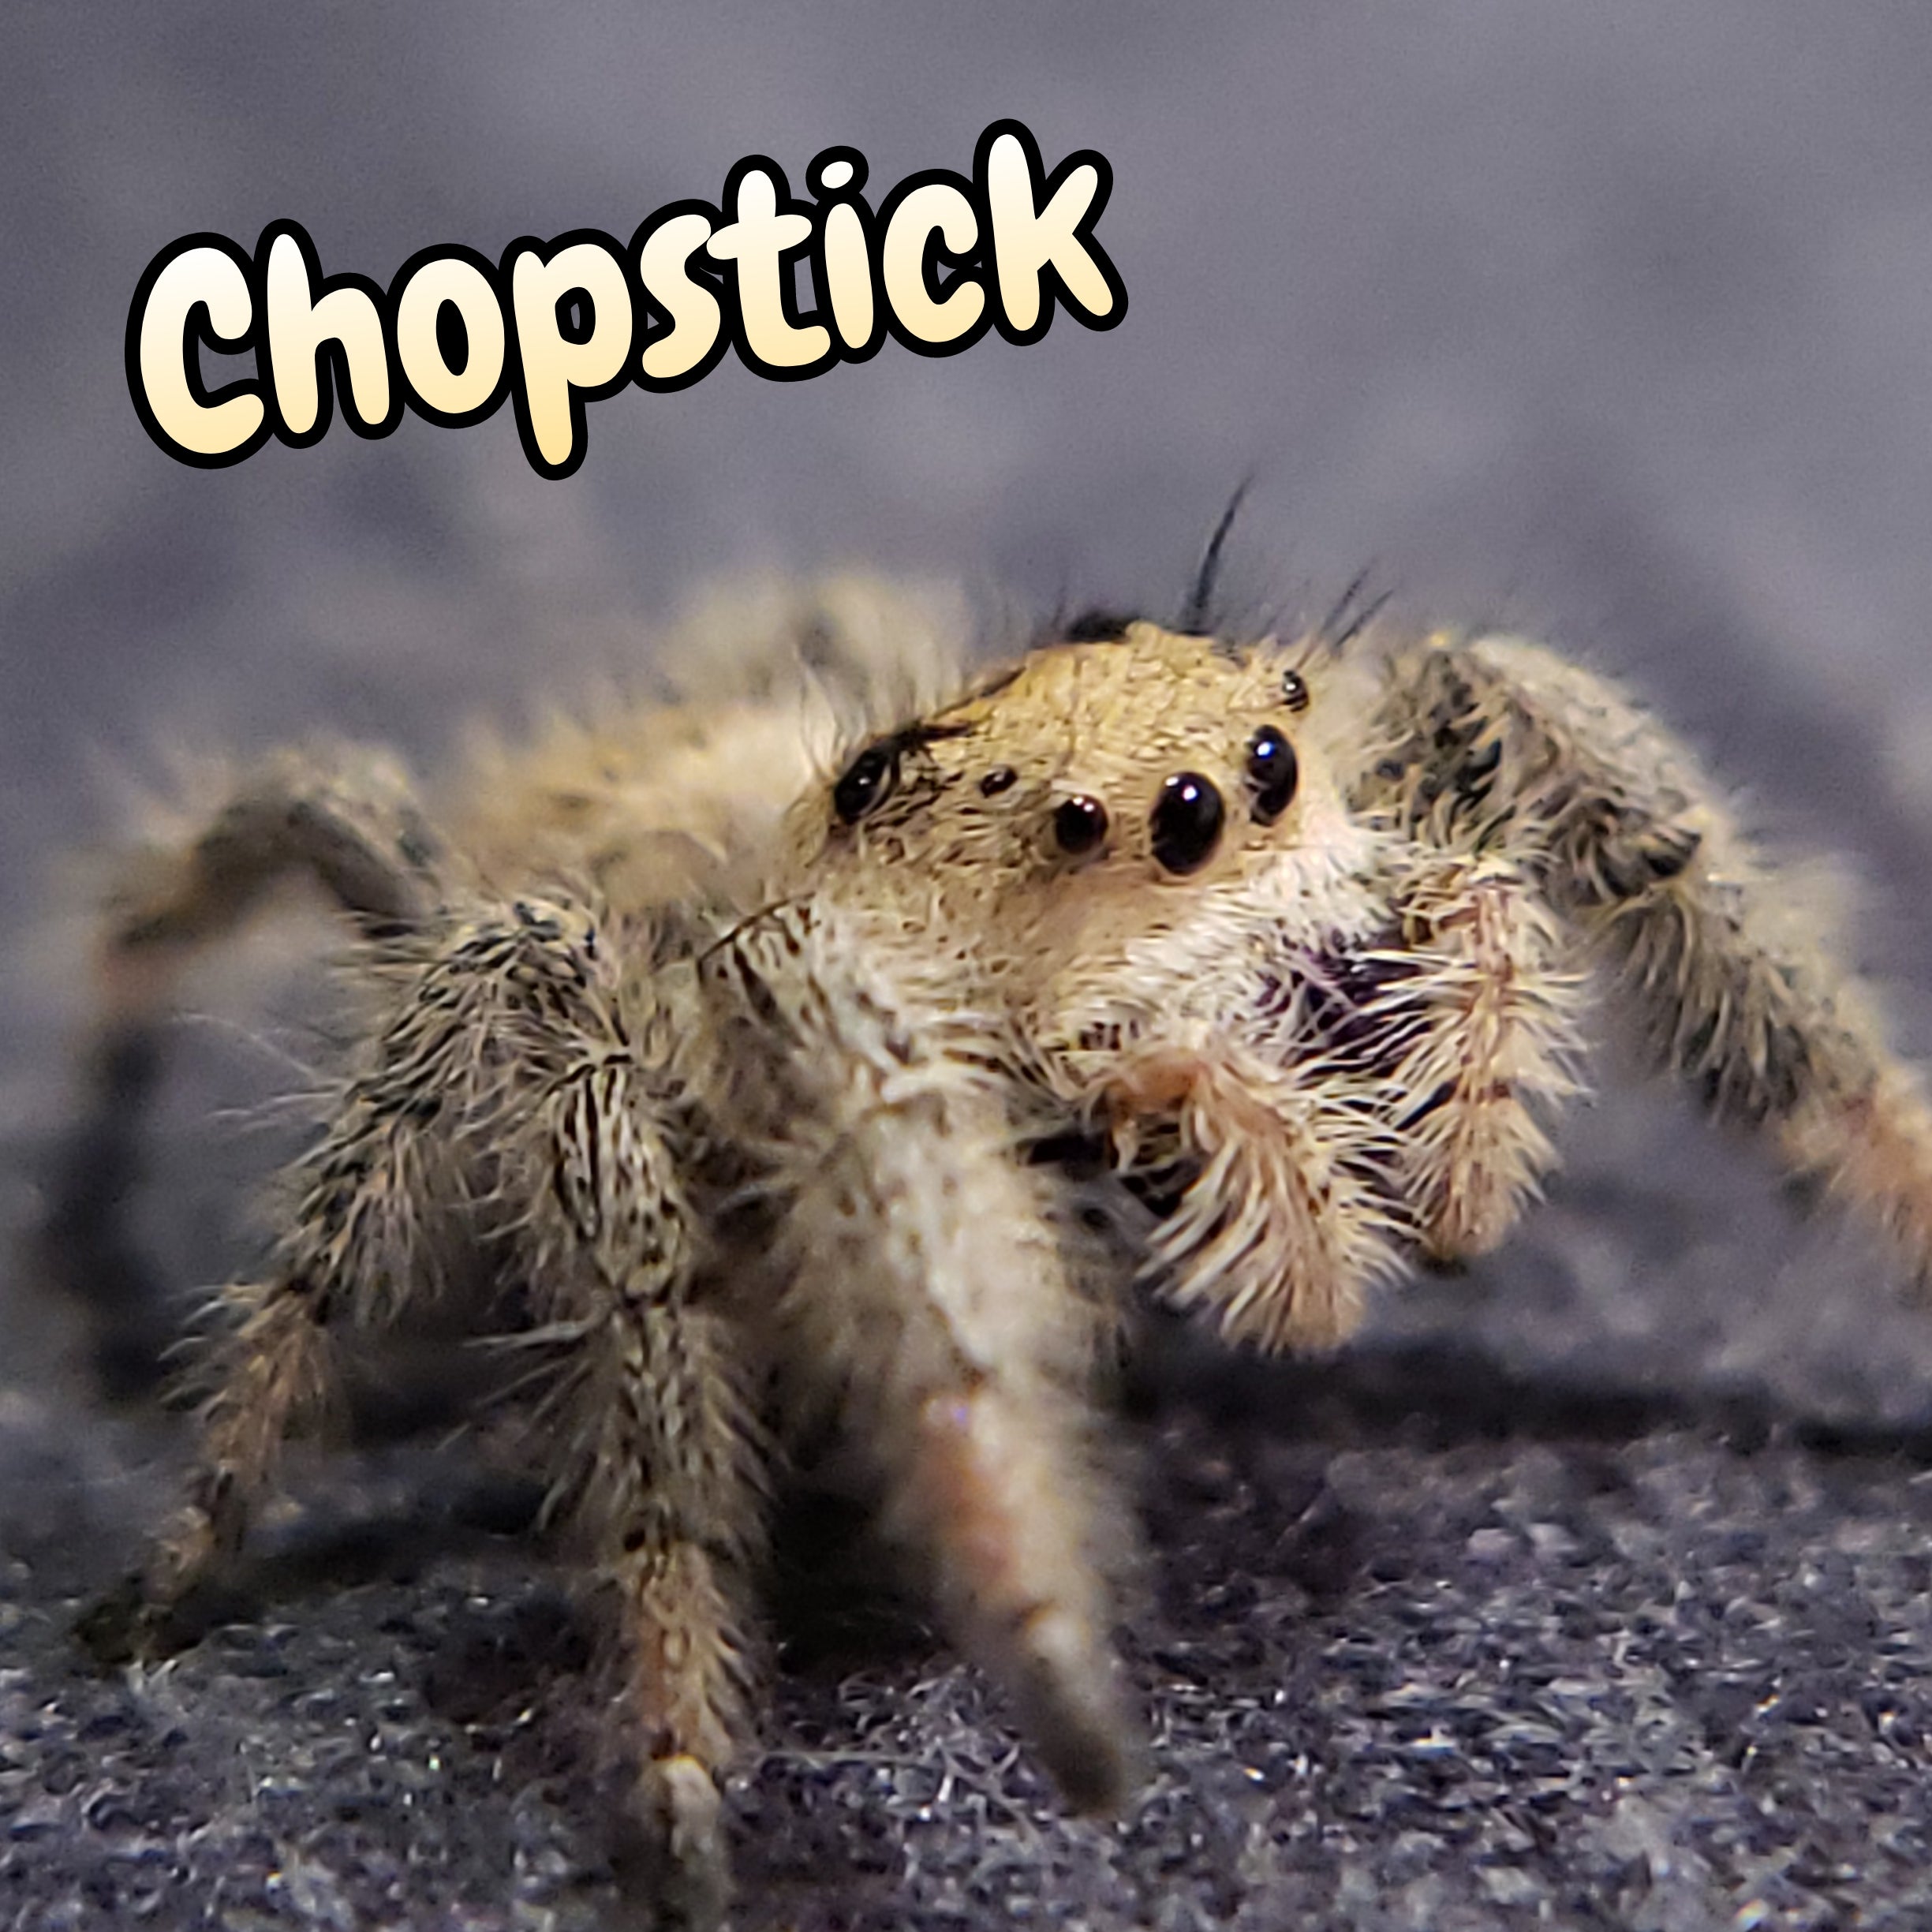 Regal Jumping Spider "Chopstick"